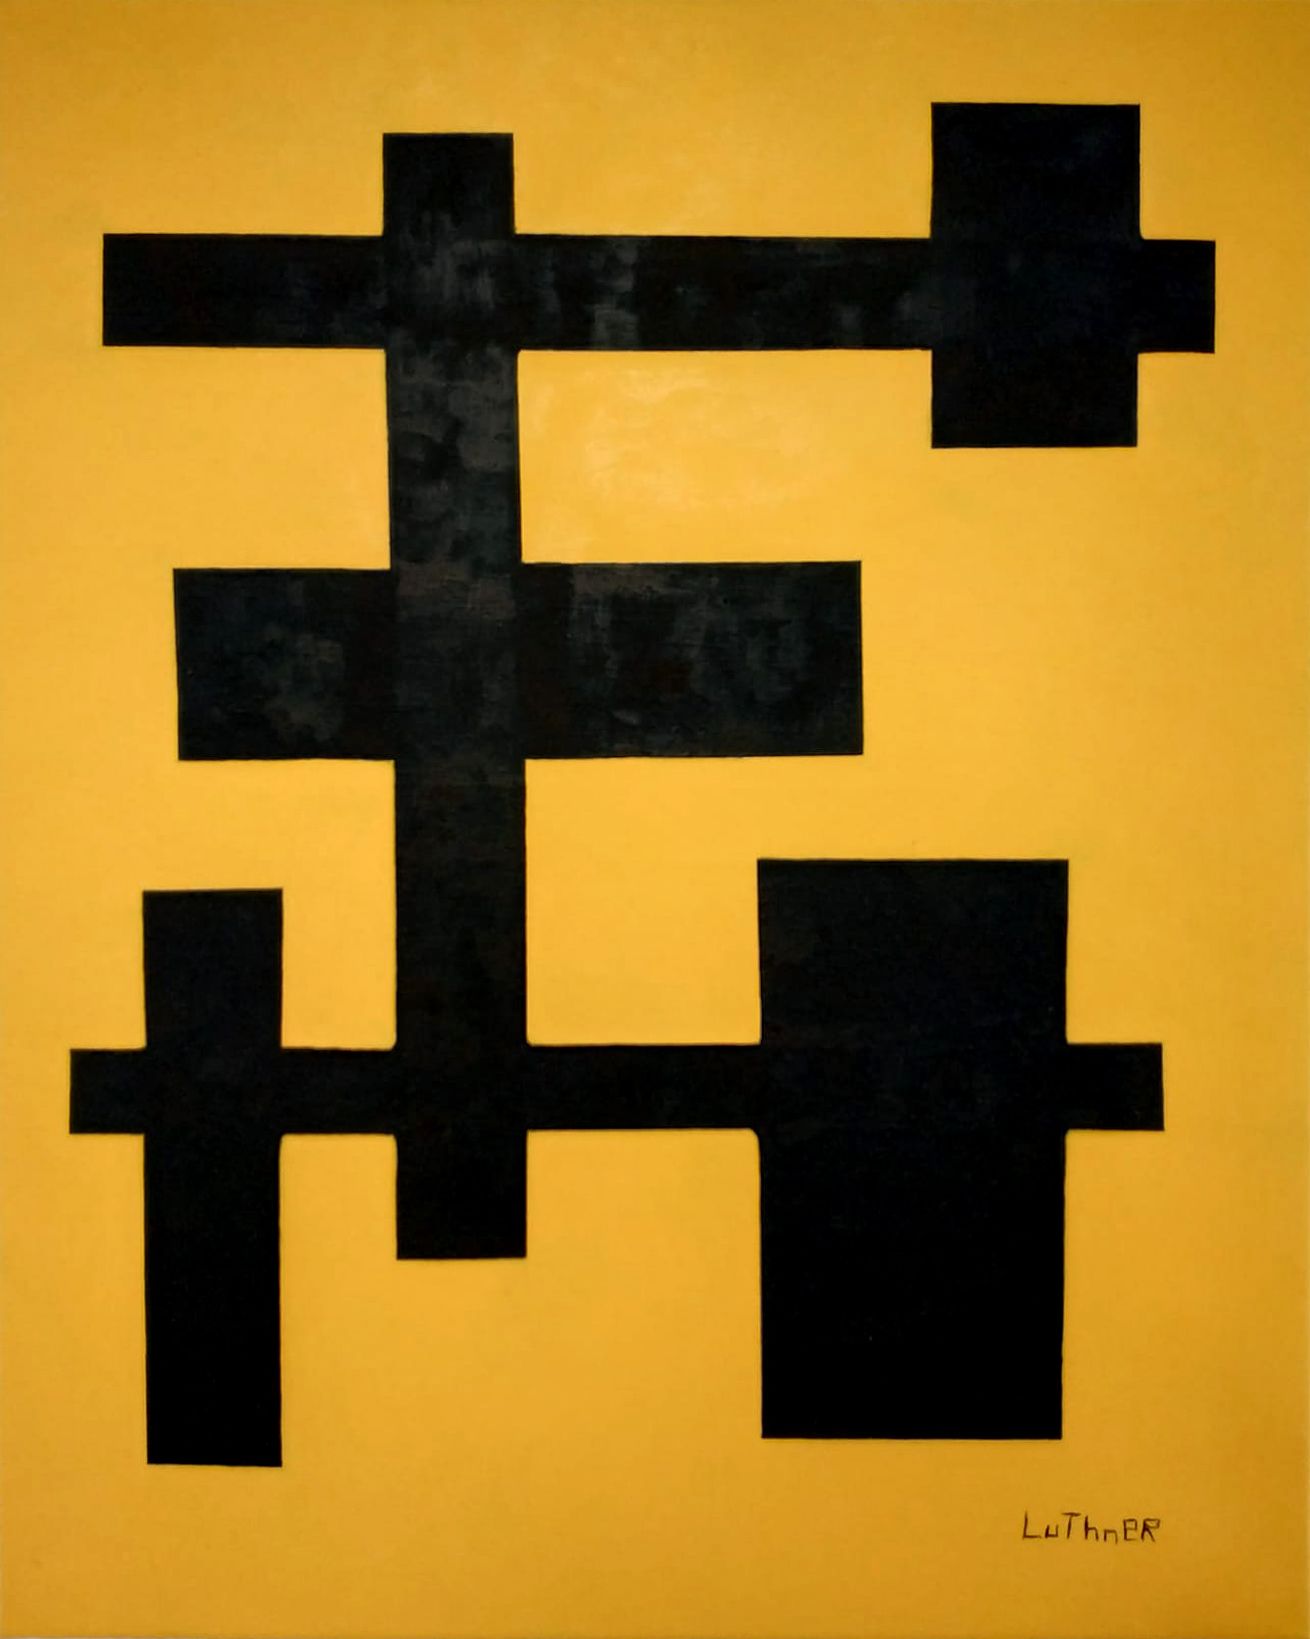 Johann Luthner 黄色背景上的黑色元素
布面油画，右下方有签名
73 x 60厘米